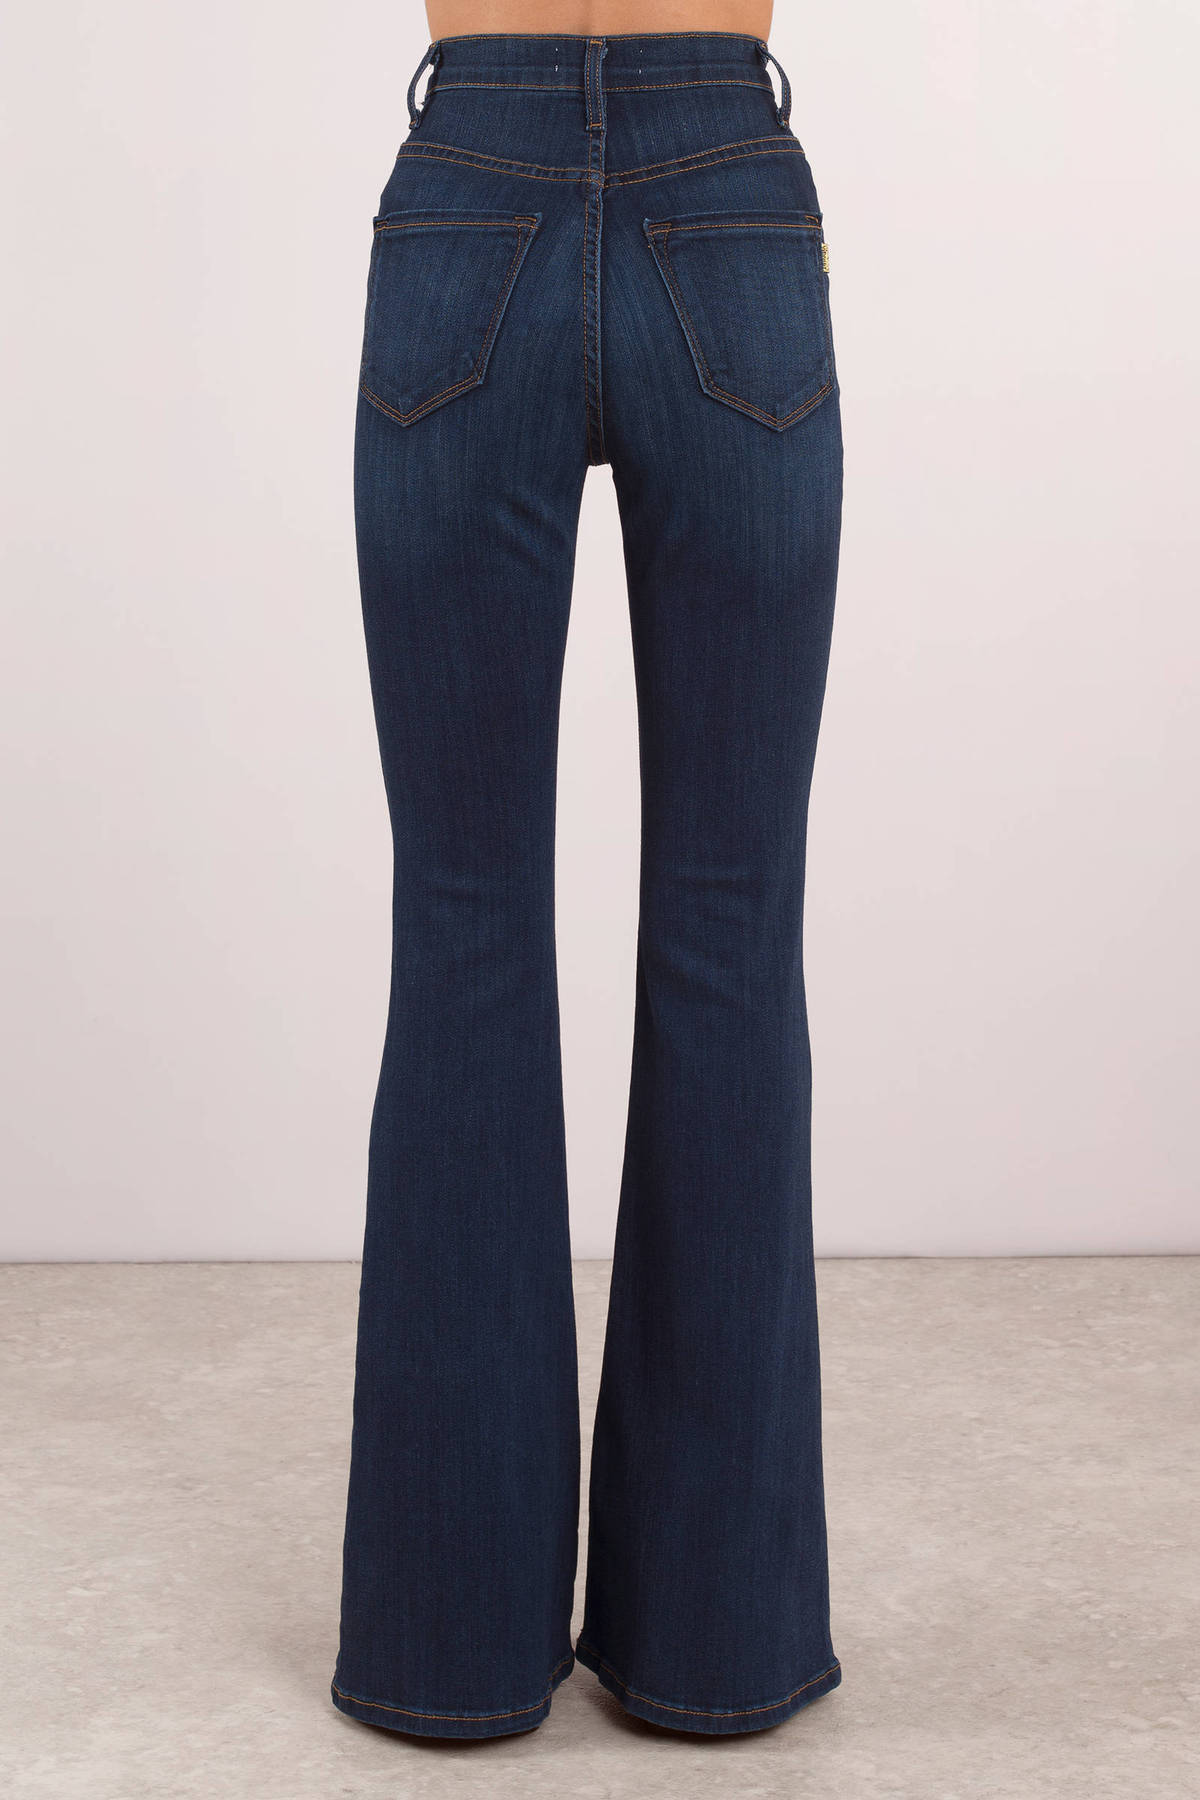 Blue Denim - Button Up Bell Bottom Jeans - Blue Dark Wash Jeans